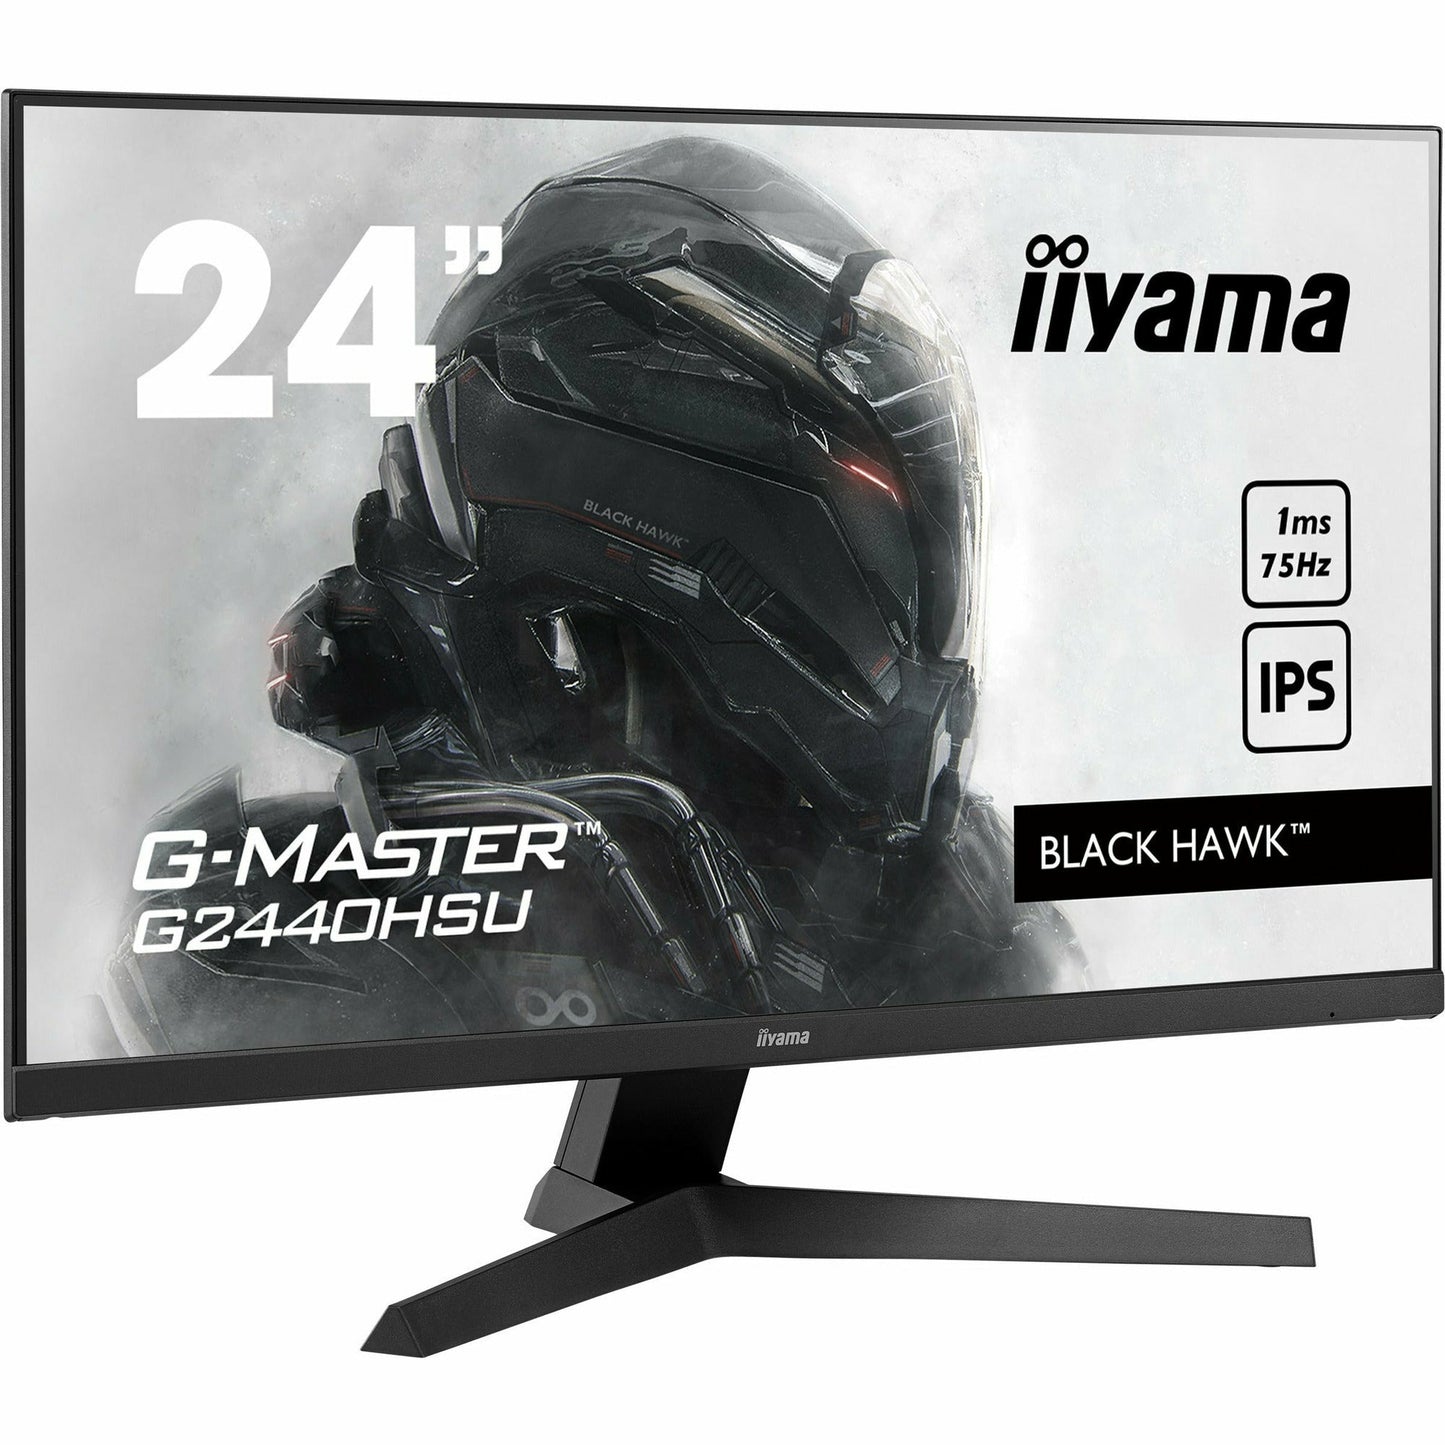 Light Gray iiyama G-Master G2440HSU-B1 24" Black Hawk Gaming Monitor